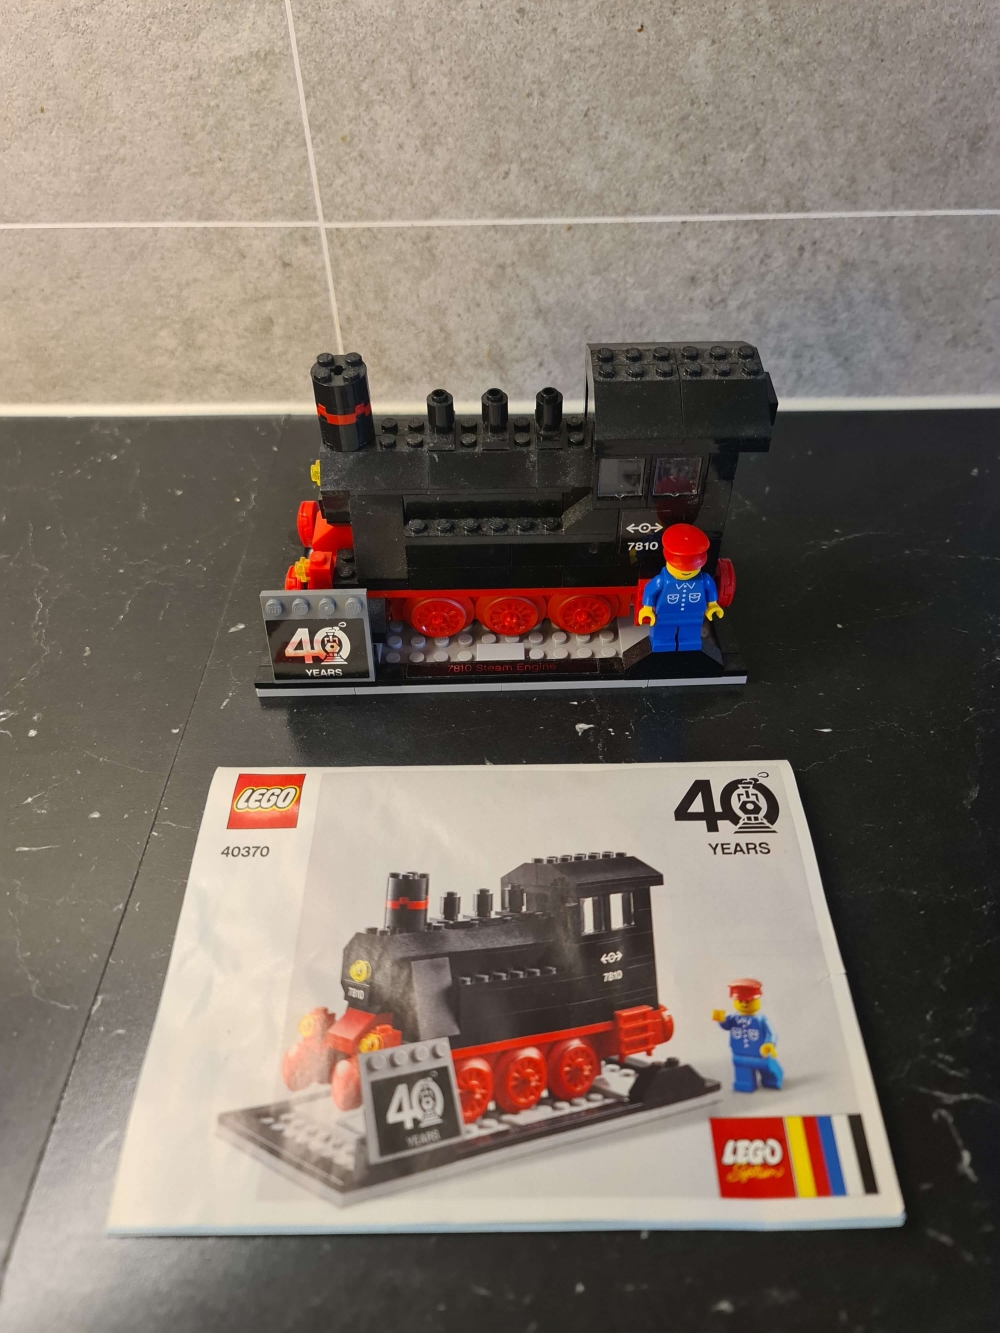 Sett 40370 fra Lego Train : Promotional serien
Meget pent. 
Komplett med manual.